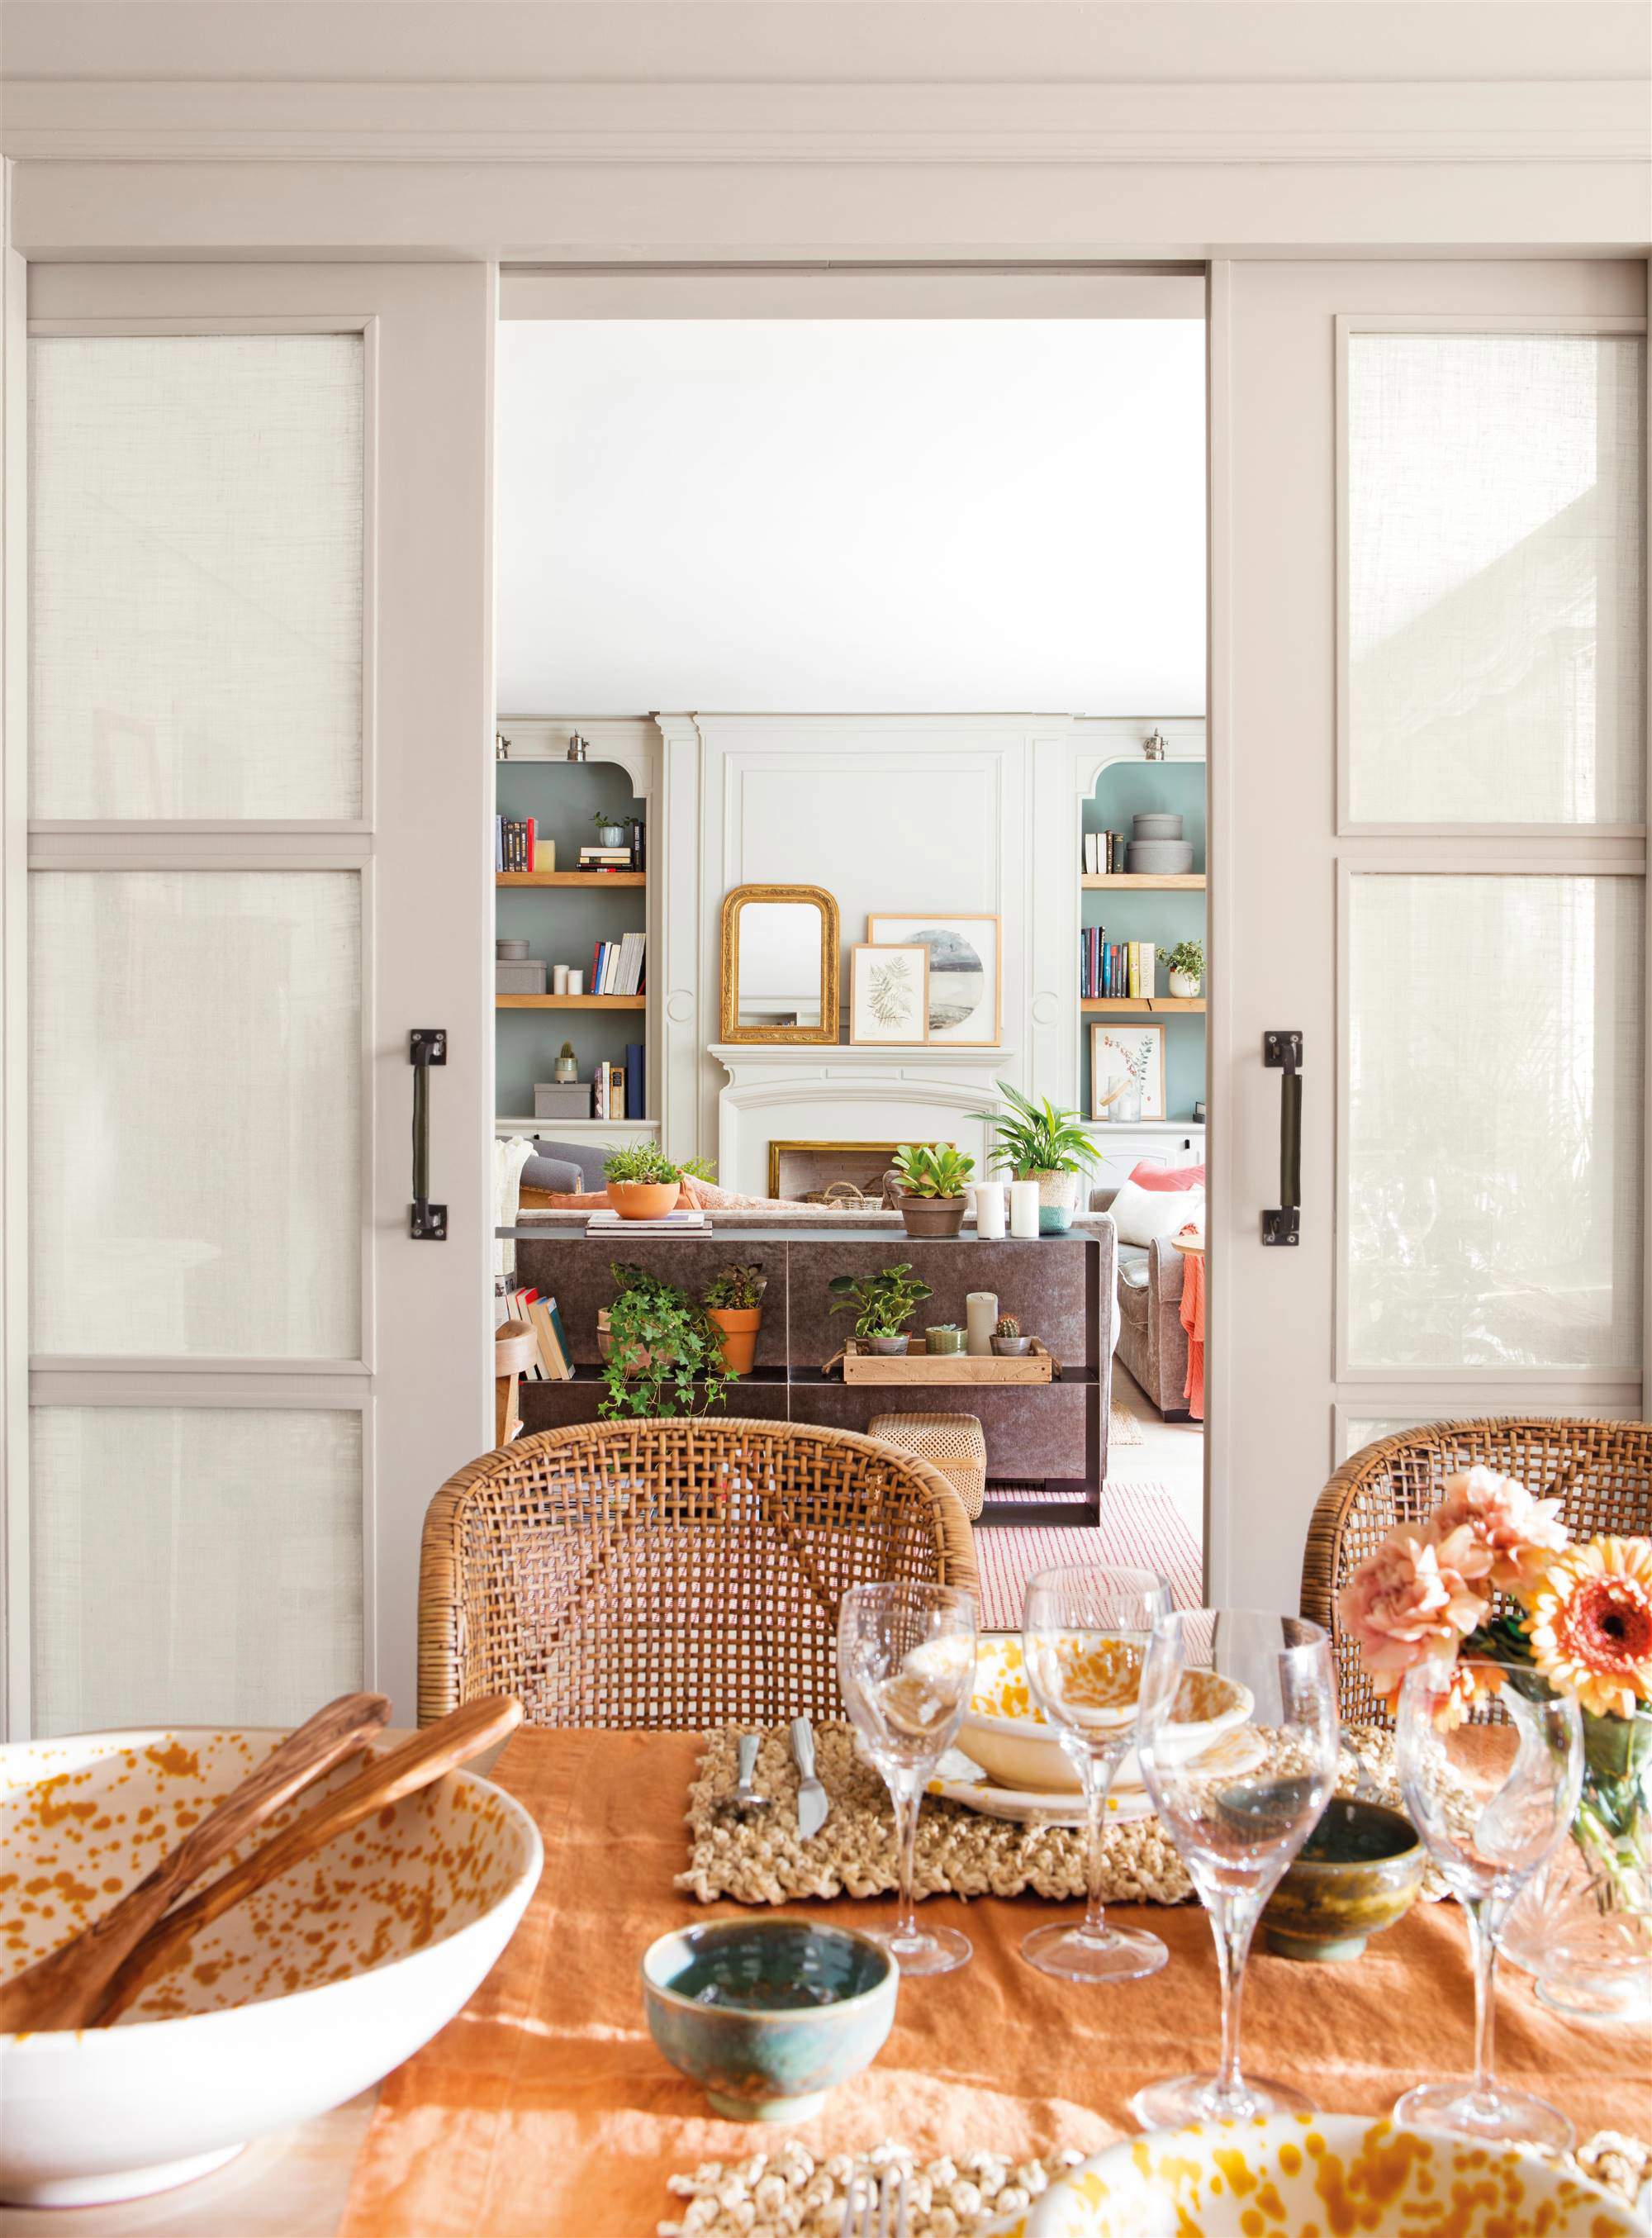 Salón comedor separado por puertas correderas de madera lacada en gris con cuarterones forrados de lino.